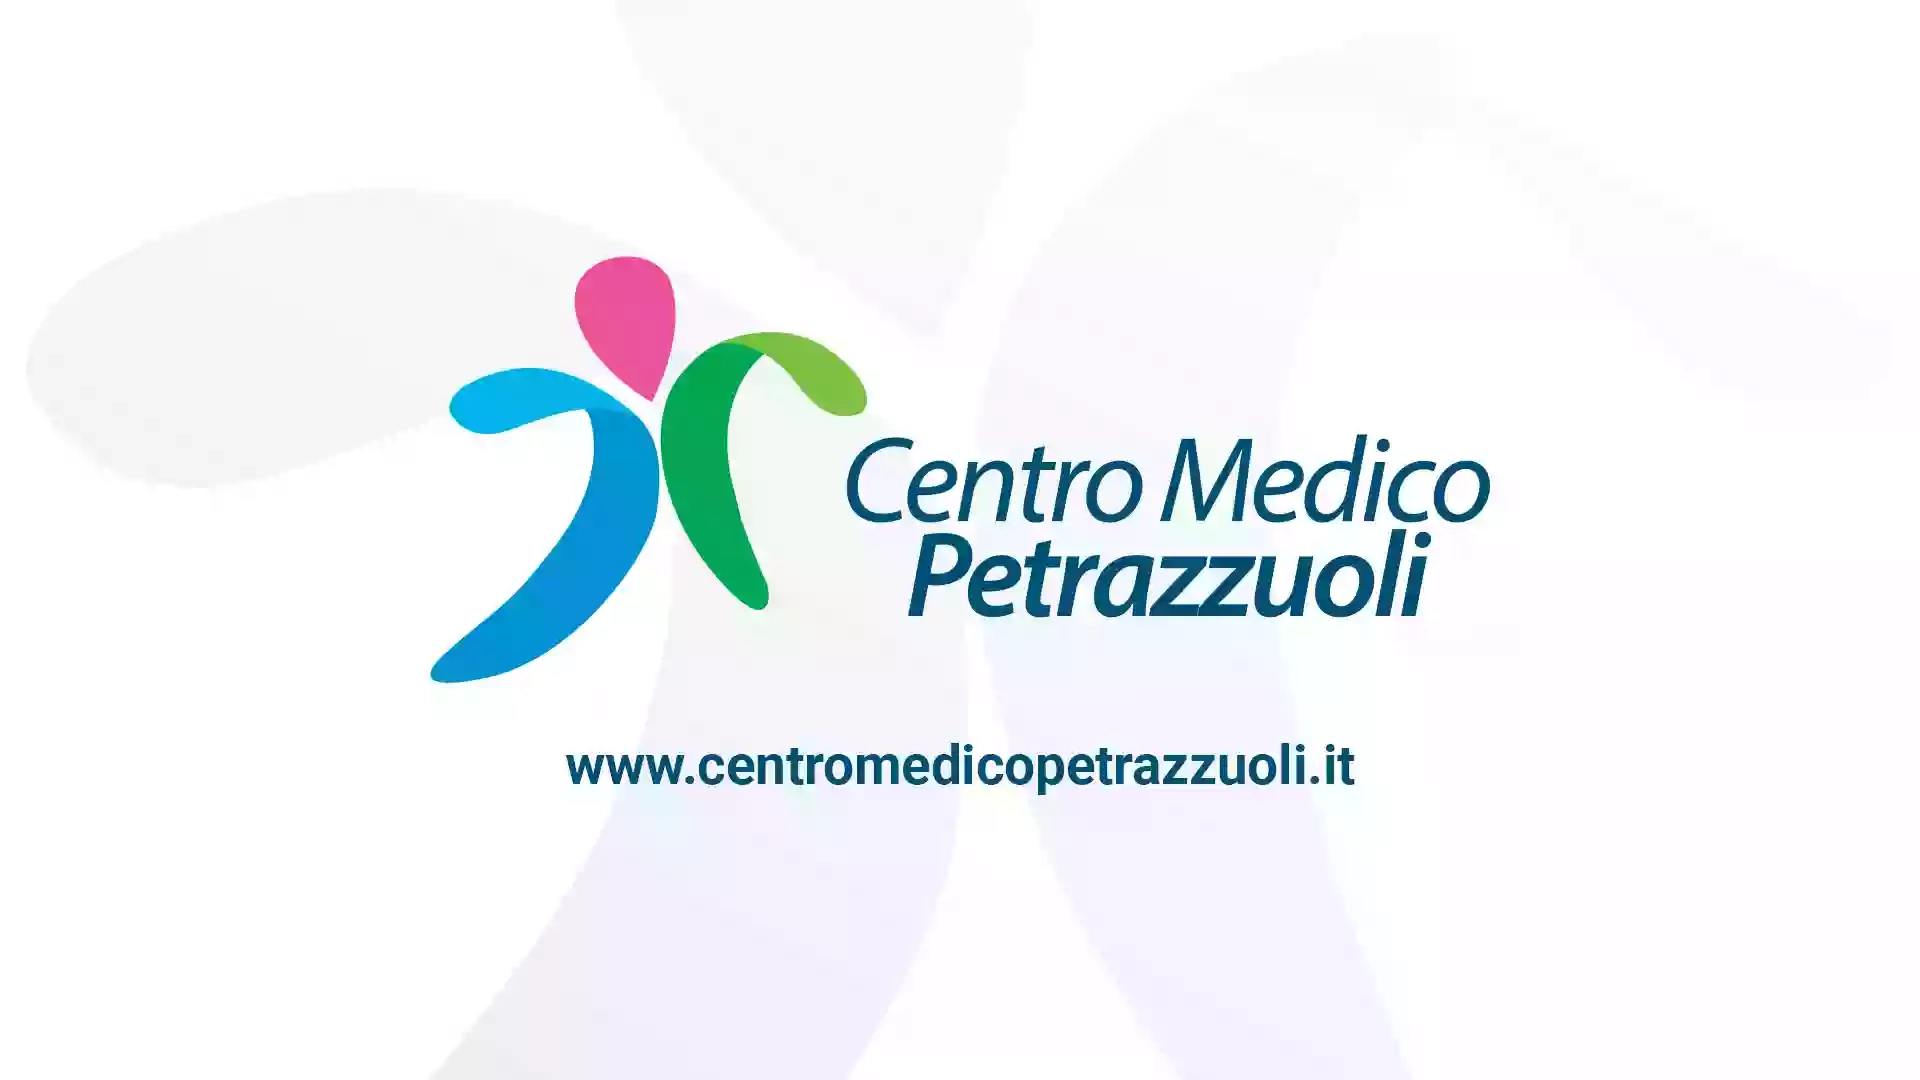 Centro Medico Petrazzuoli